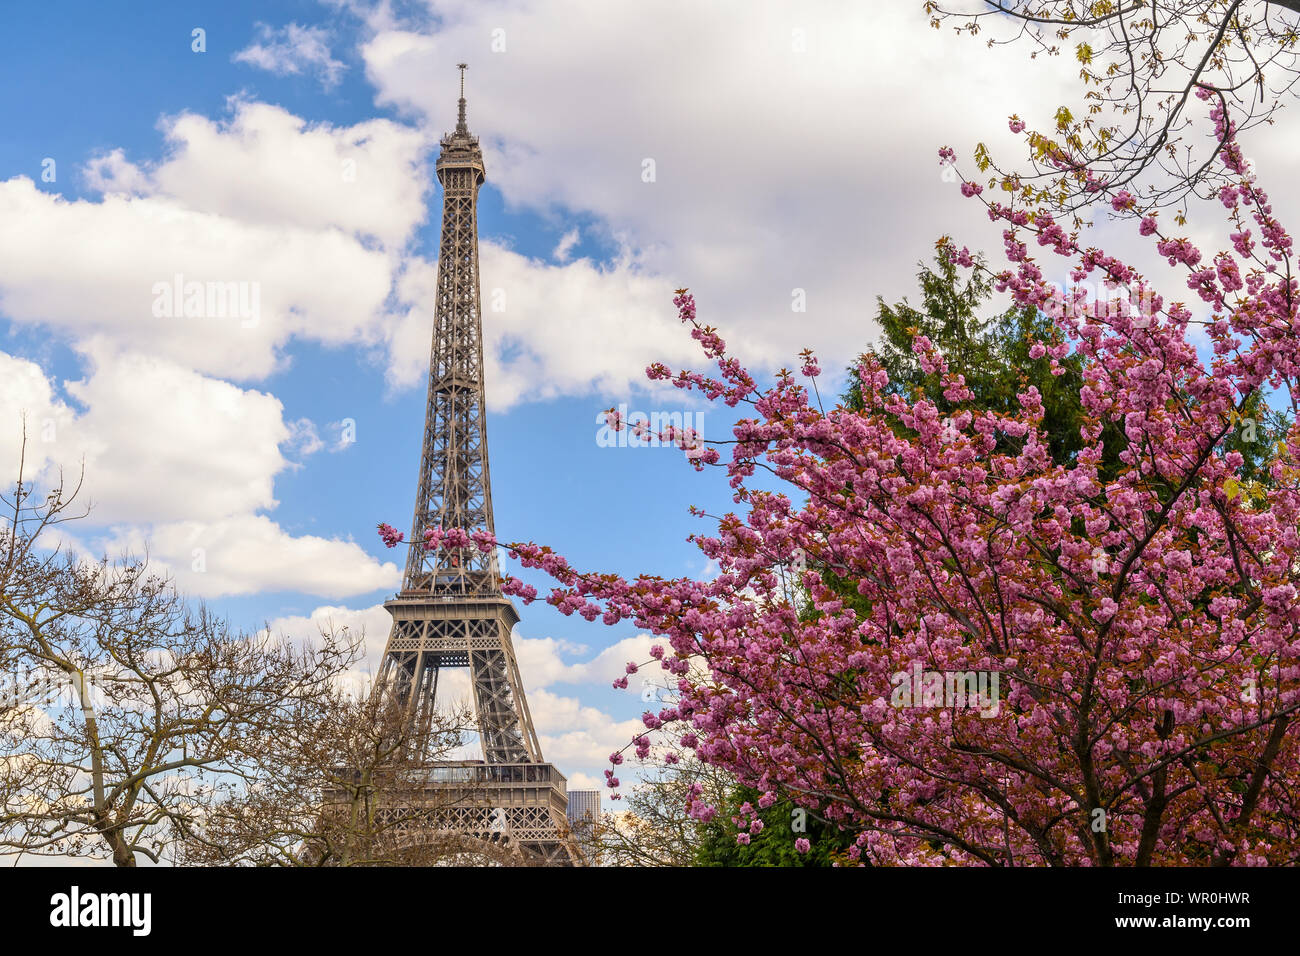 Paris France ville à la Tour Eiffel avec fleur de cerisier de printemps Banque D'Images